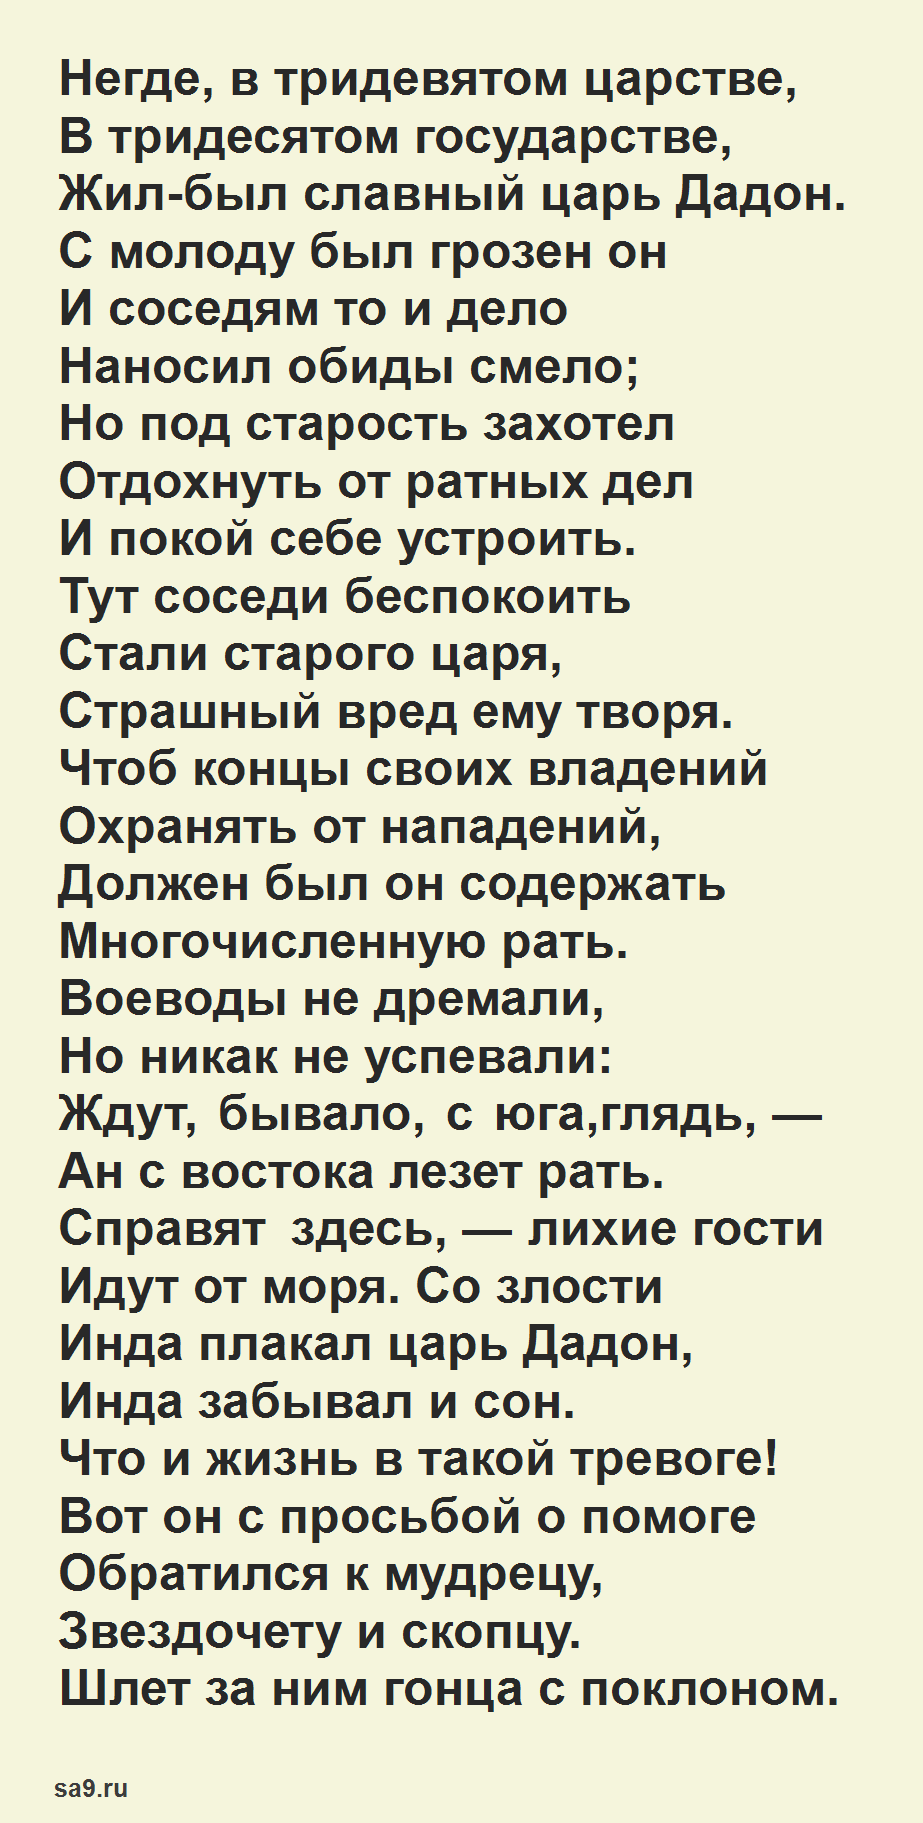 Сказка 'О золотом петушке', Пушкин